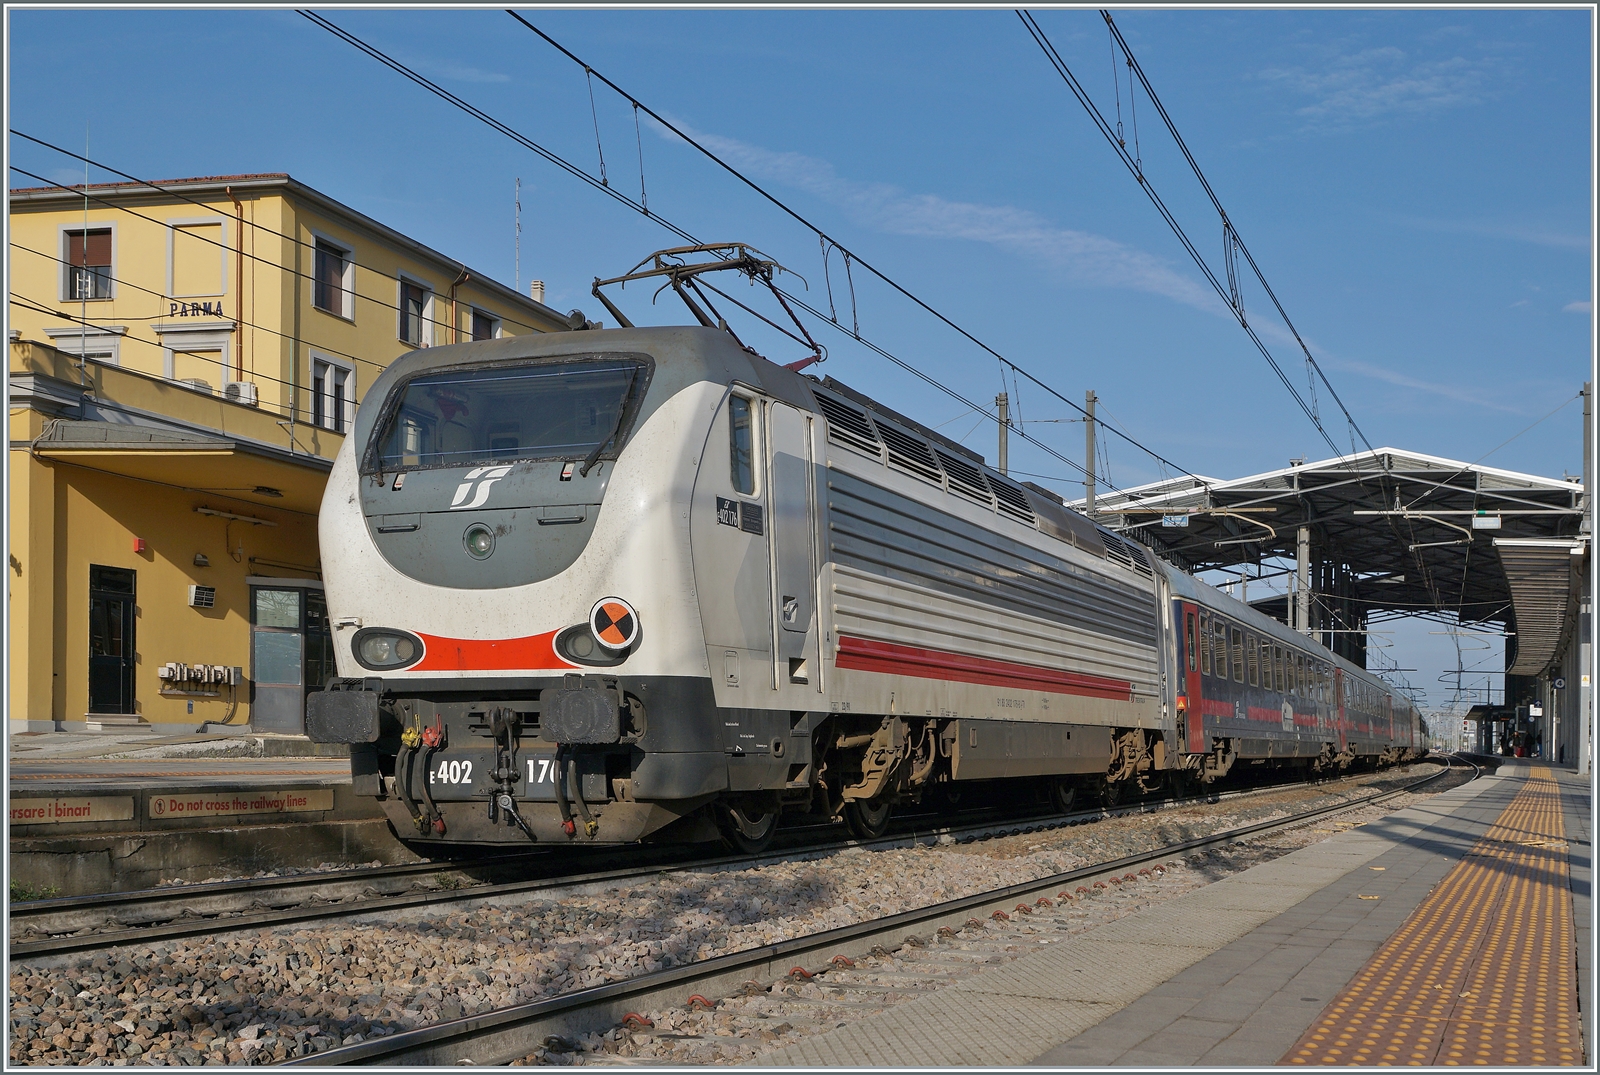 Der Nachtzug ICN (Intercity Notte) der FS Trenitalia von Sizilien nach Milano macht schon fast am Ziel in Parma eine kurzen Halt; am Zugschluss läuft die FS Trenitalia E 402 176.

18. April 2023